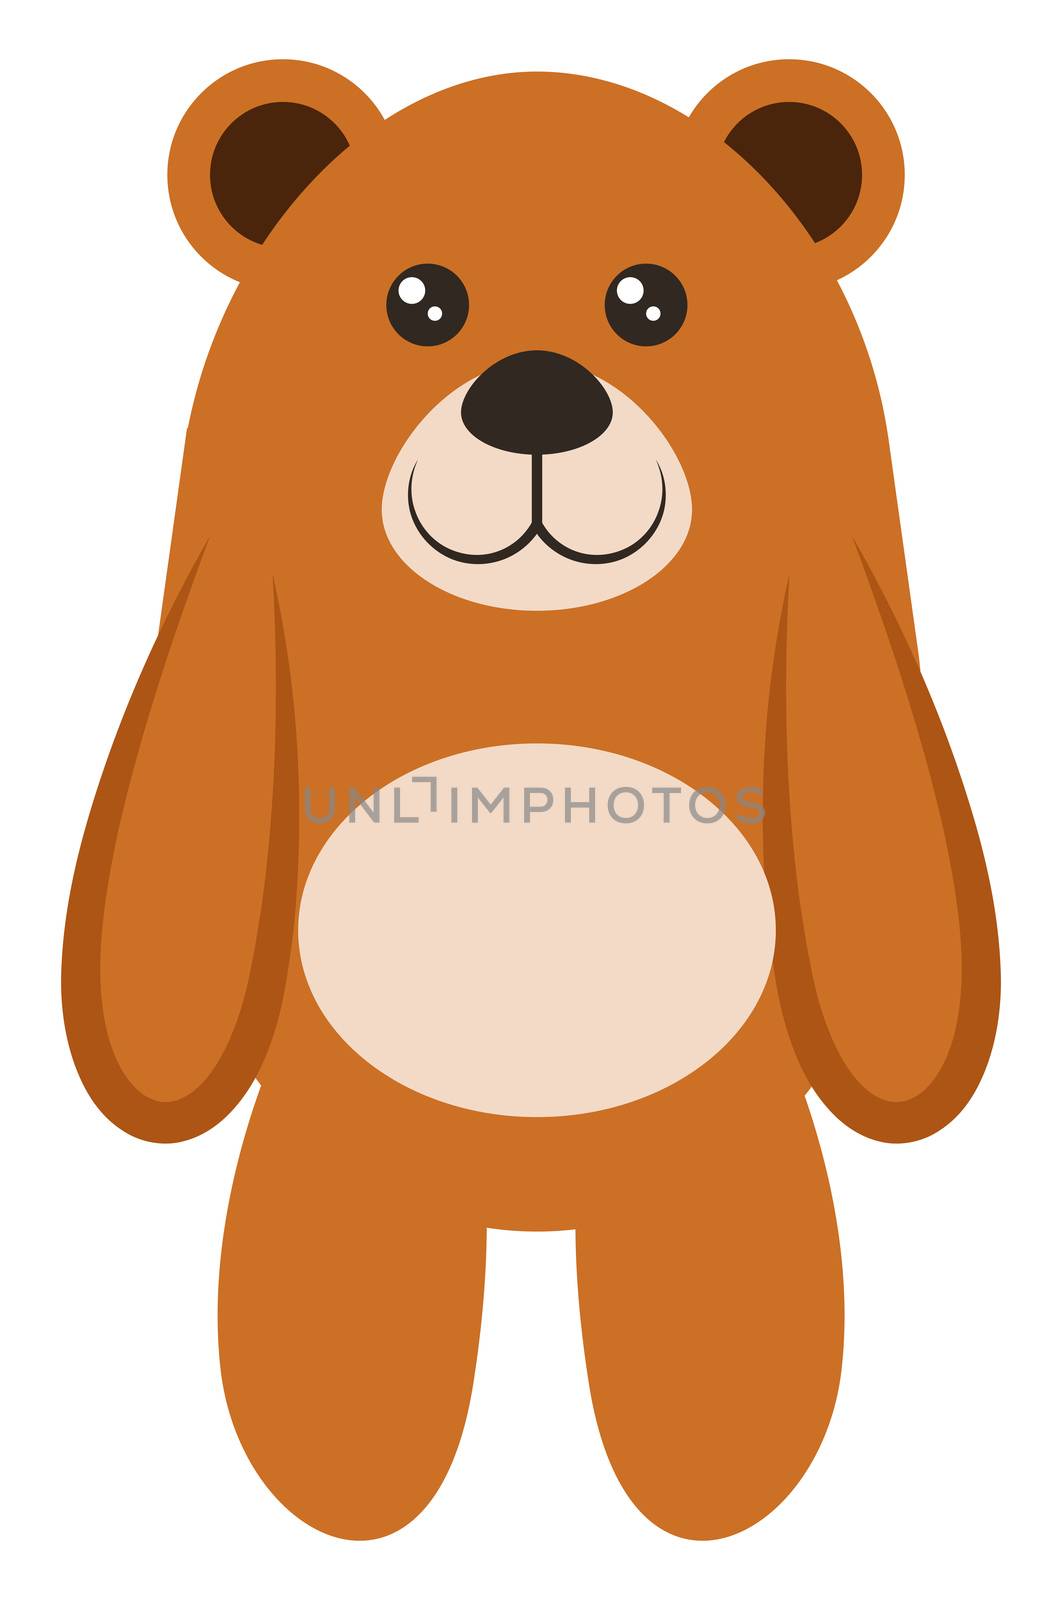 Teddy bear, illustration, vector on white background by Morphart